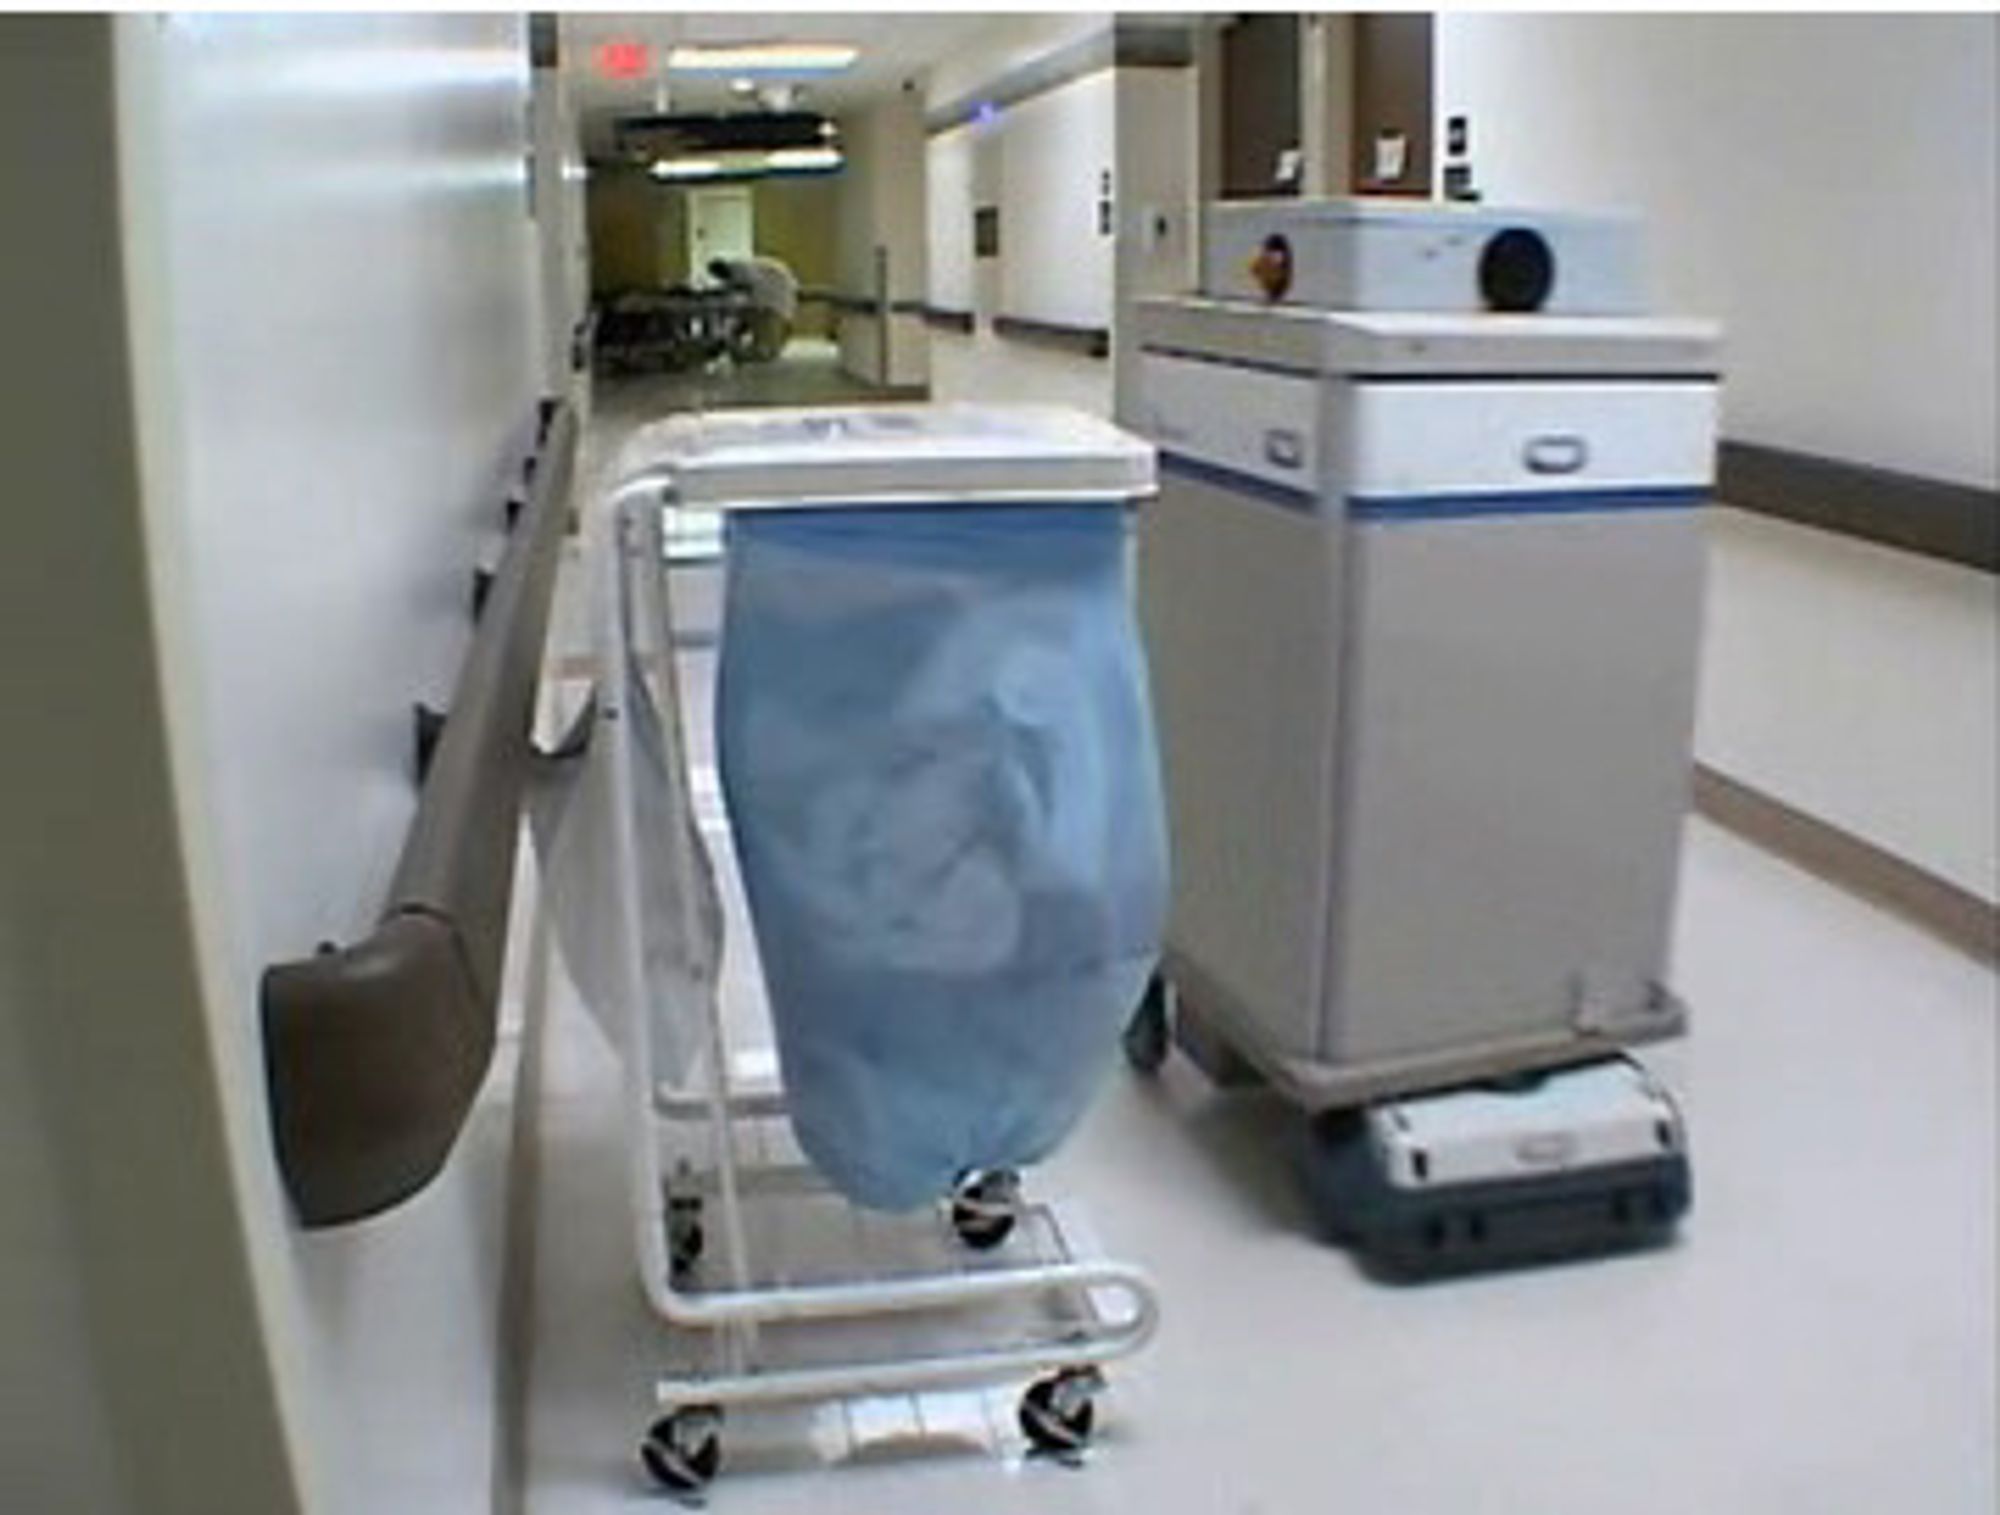 BBC opplyser ikke om hvem som leverer robotene til Forth Valley-sykehuset. Bildet er hentet fra den amerikanske leverandøren Aethon, og viser en av deres helseroboter i aksjon i et amerikansk sykehus.